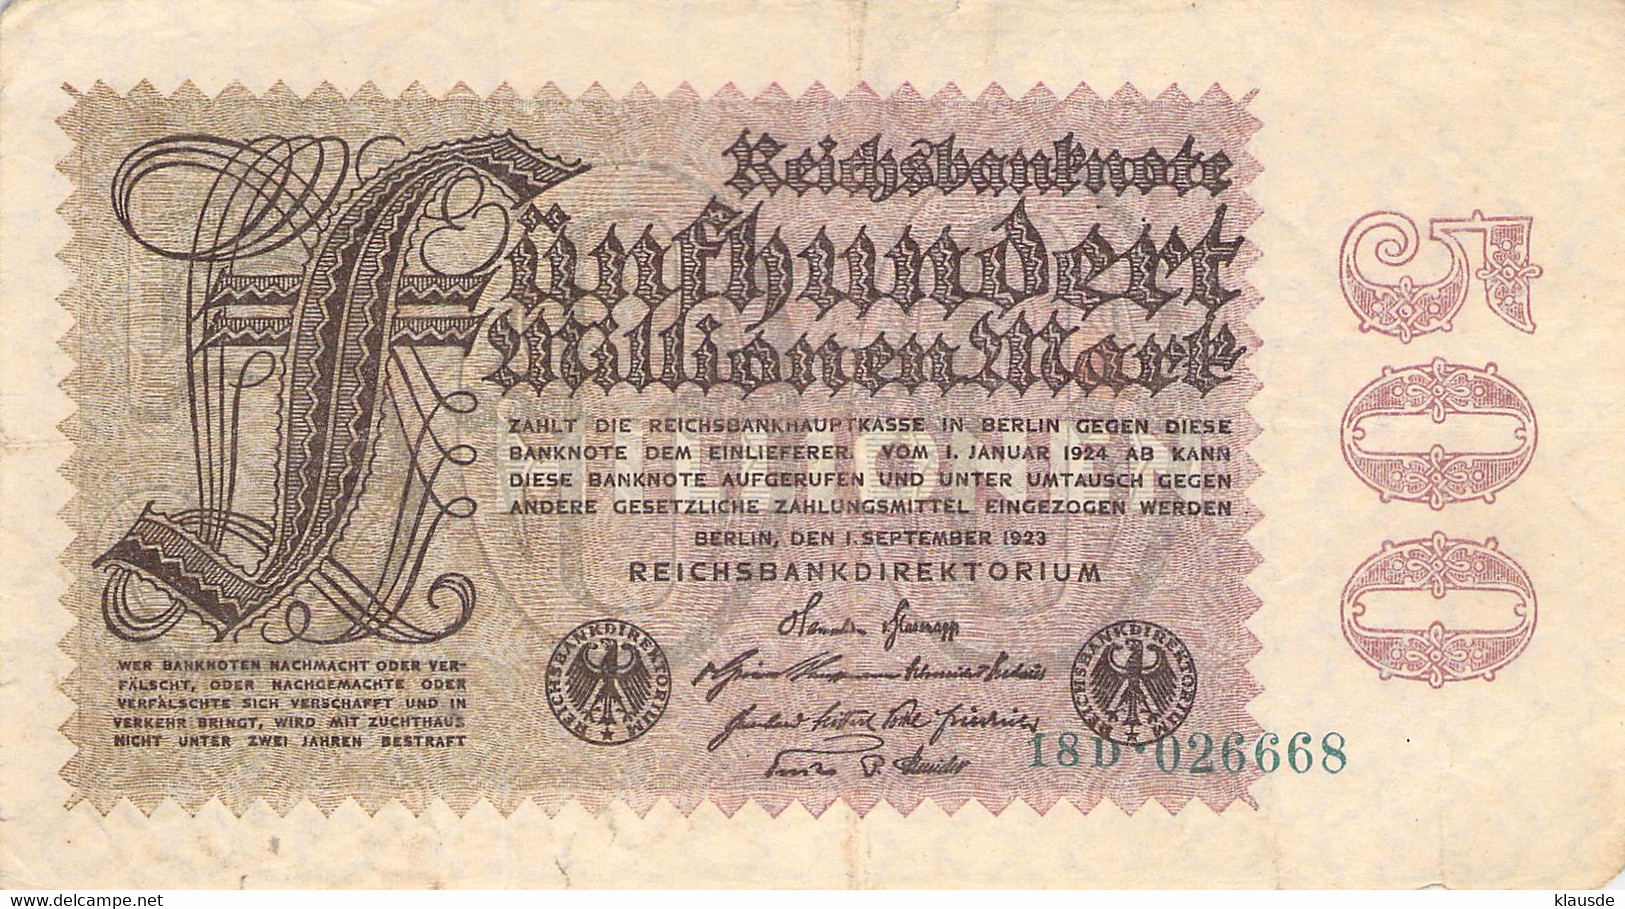 500 Mio Mark Reichsbanknote VF/F (III) - 500 Millionen Mark